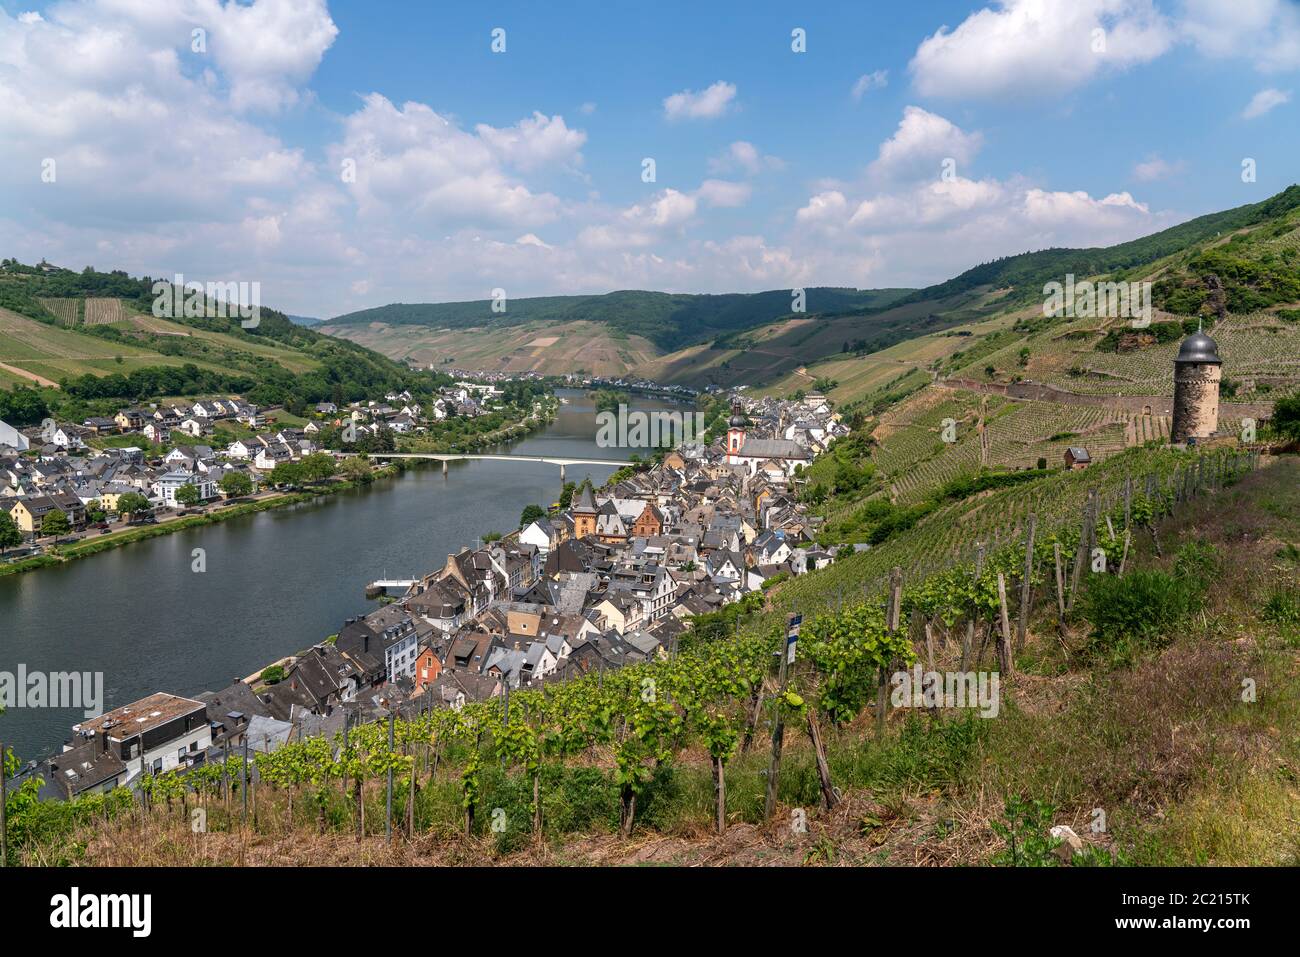 Weinberge, Pulverturm, die Mosel und der Ort Zell, Rheinland-Pfalz, Deutschland  | Vineyard,  Moselle river and the town Zell, Rhineland-Palatinate, G Stock Photo